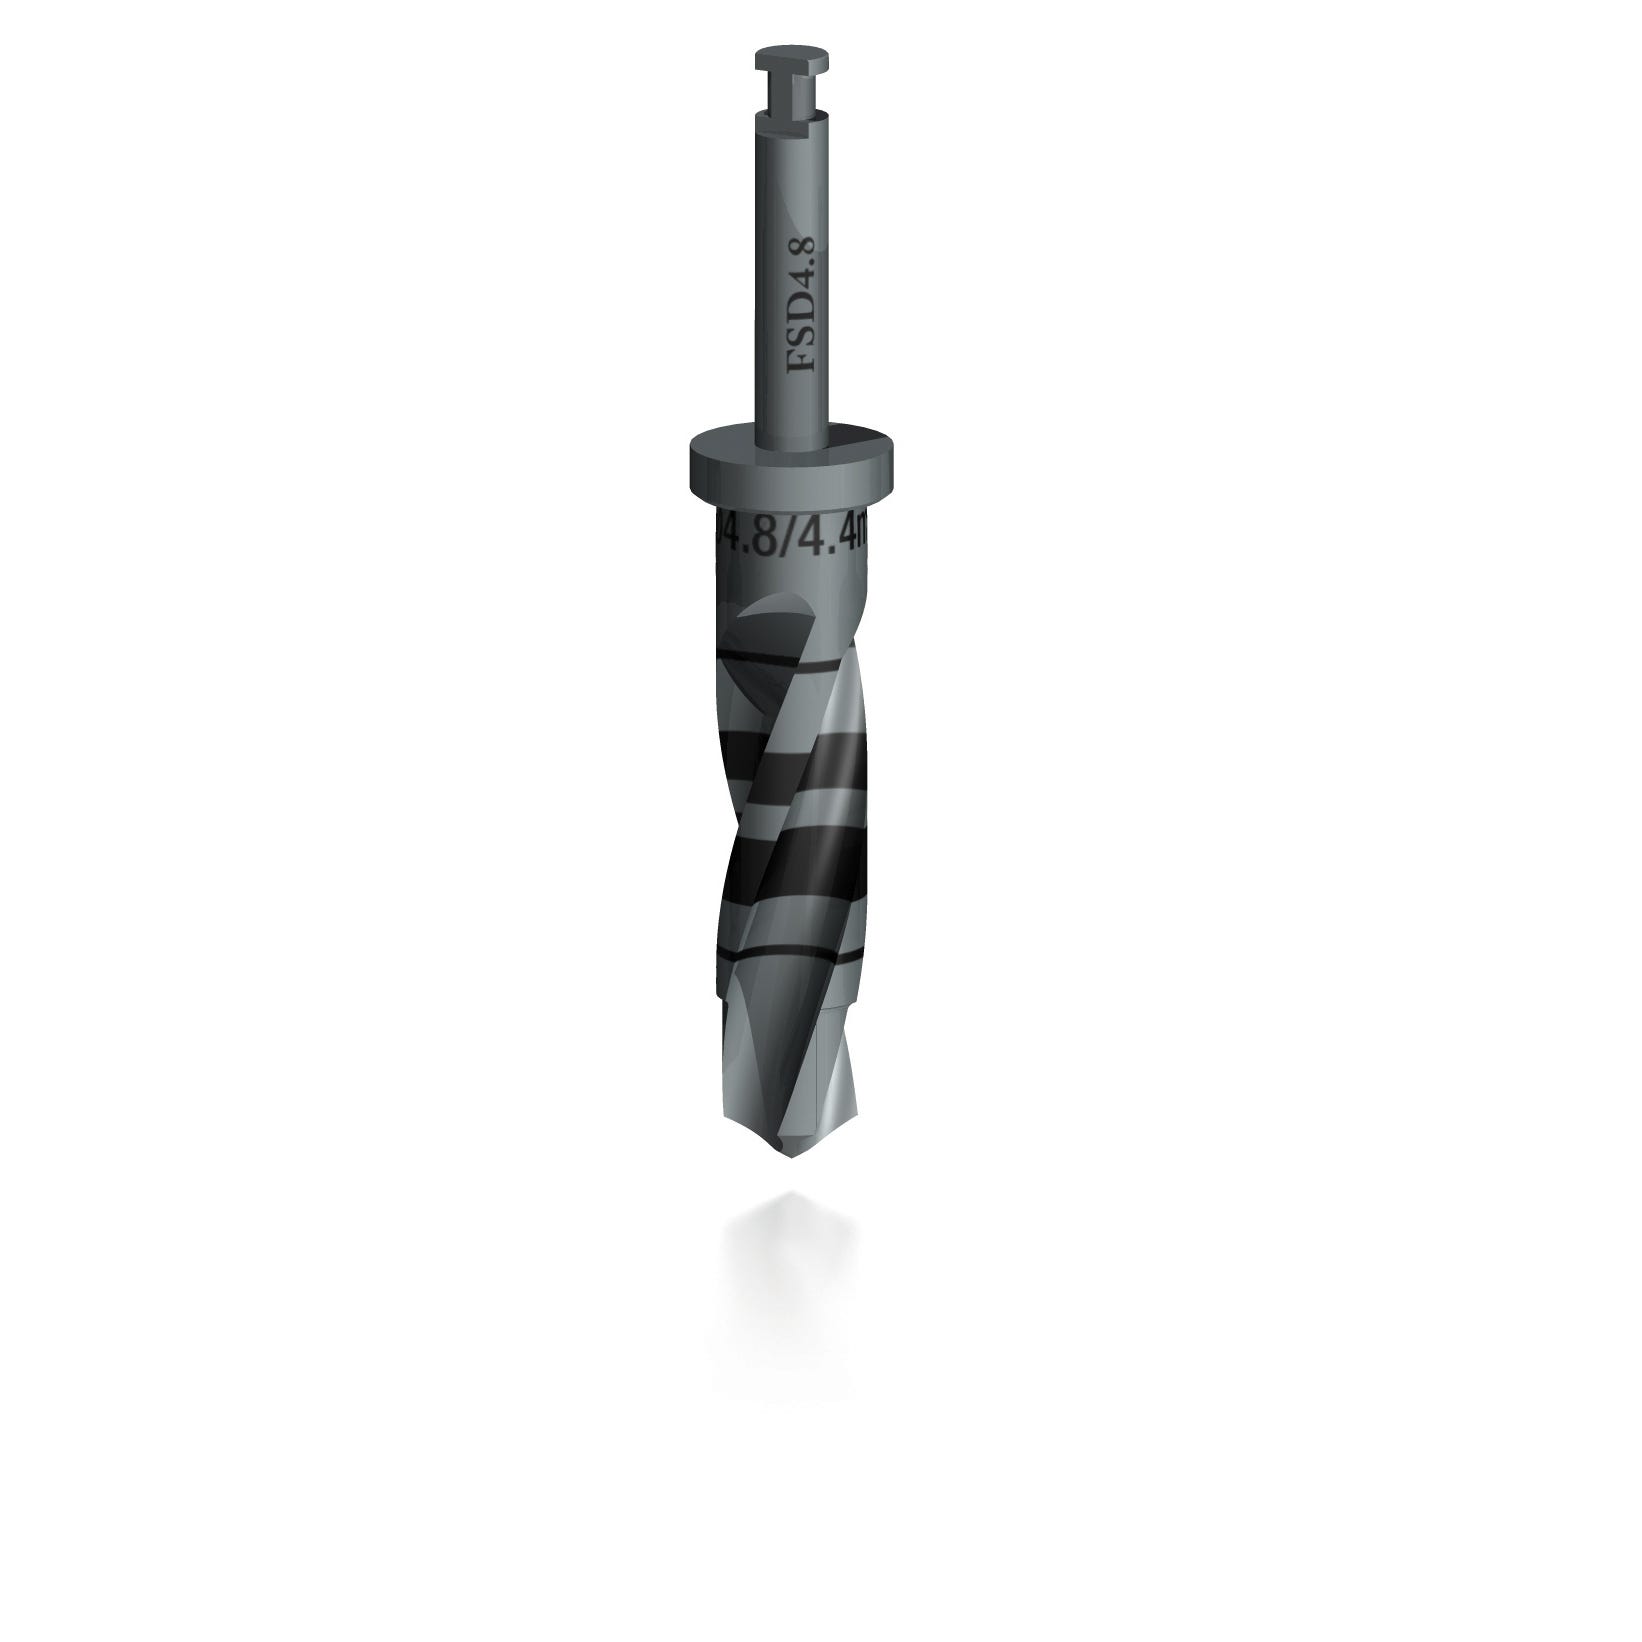 4.8mm - 4.4mm Twist Drill Step - LONG (INTERNAL HEX System)